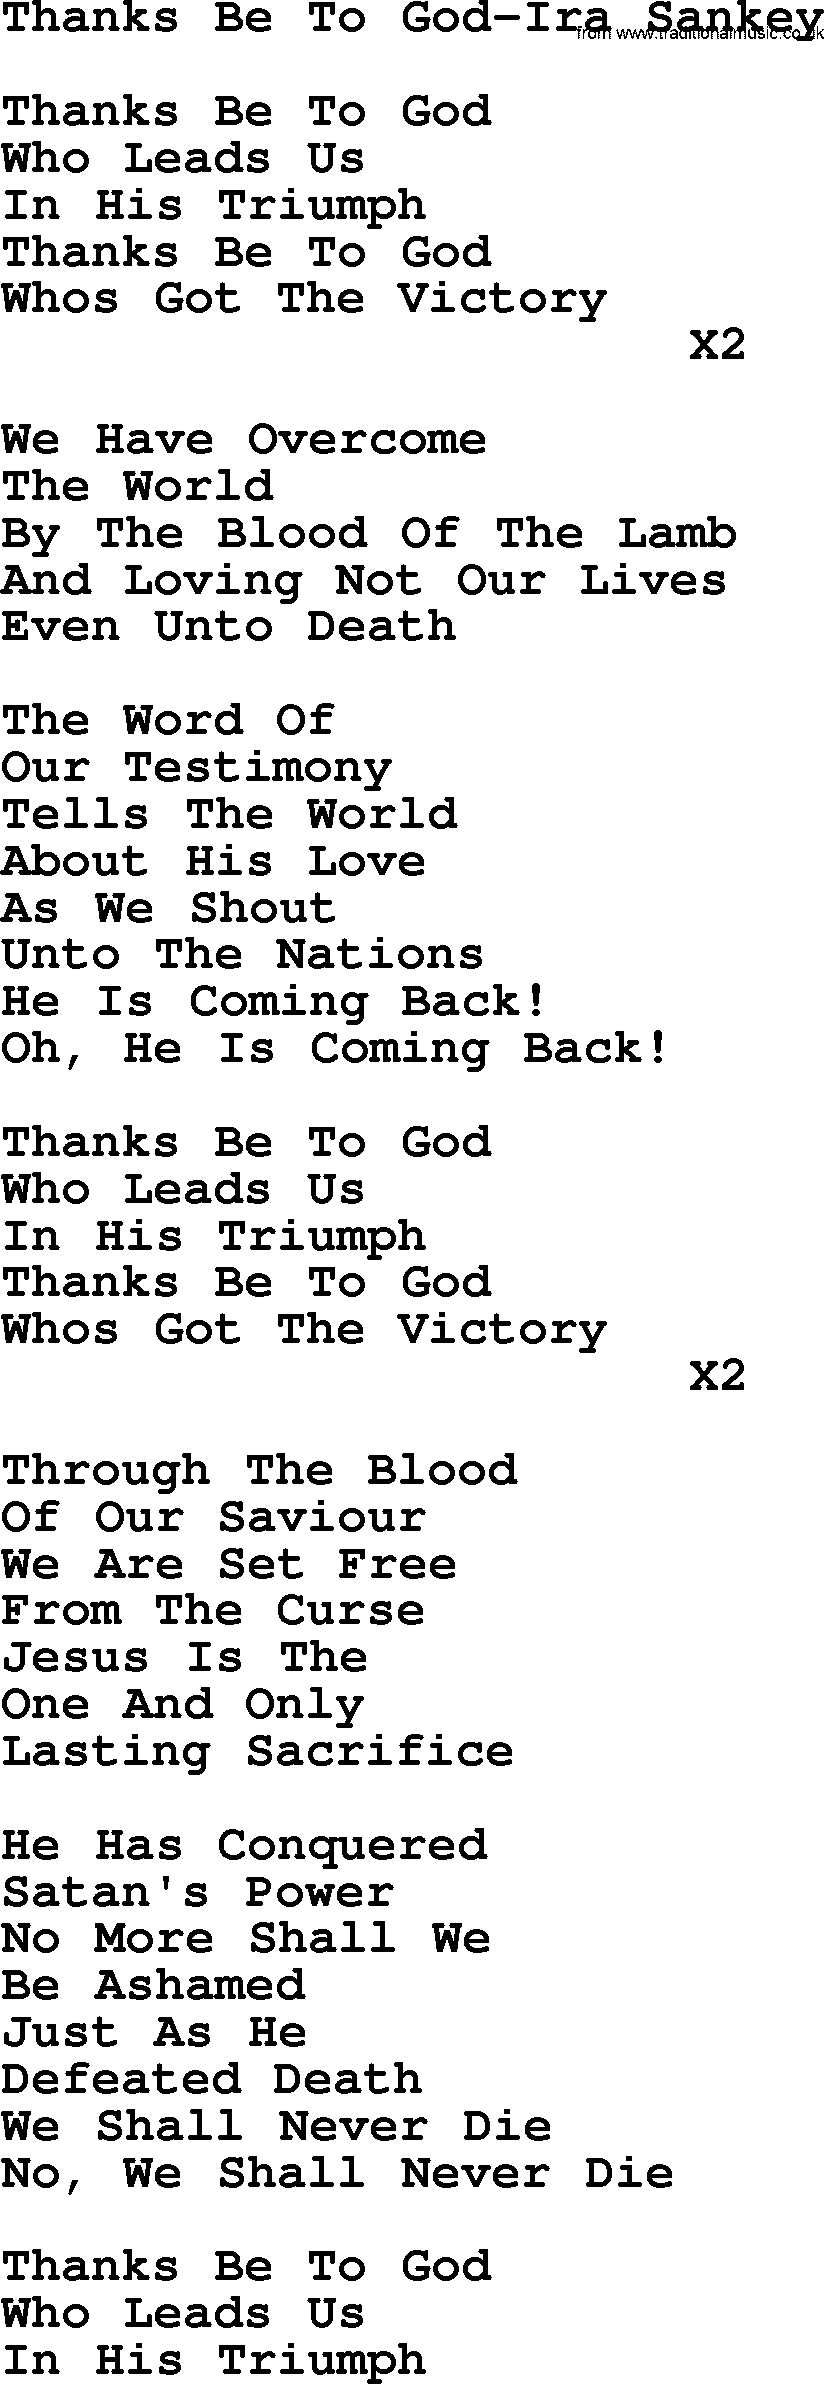 Ira Sankey hymn: Thanks Be To God-Ira Sankey, lyrics